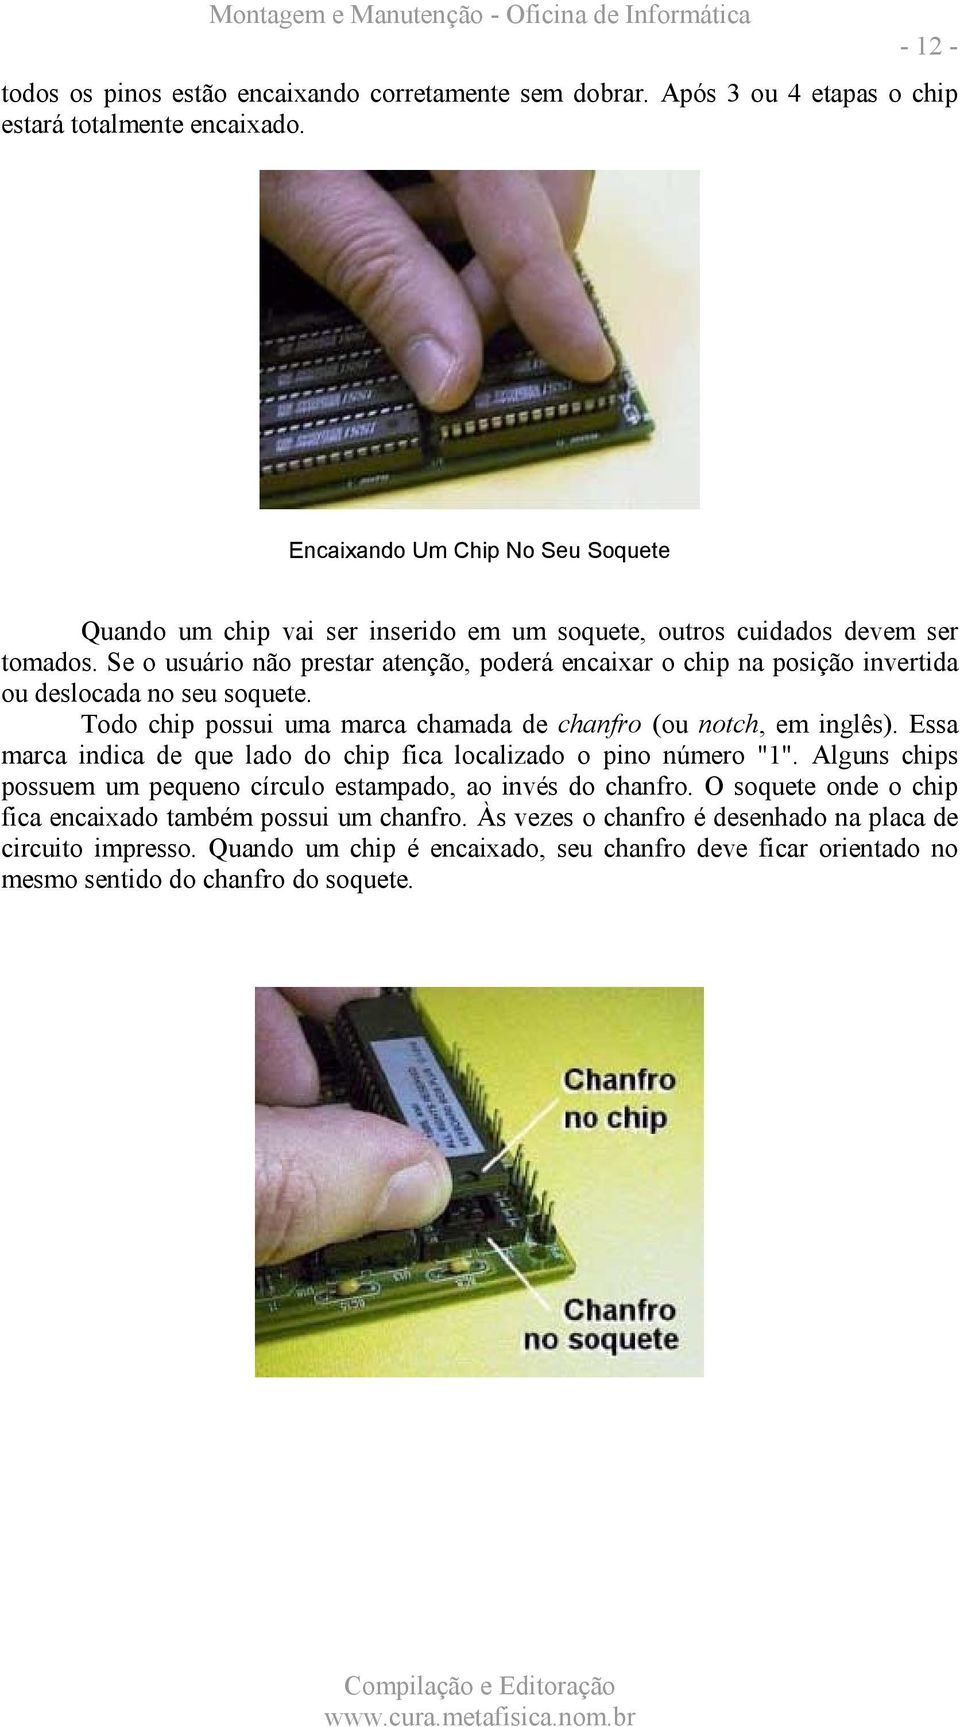 Se o usuário não prestar atenção, poderá encaixar o chip na posição invertida ou deslocada no seu soquete. Todo chip possui uma marca chamada de chanfro (ou notch, em inglês).